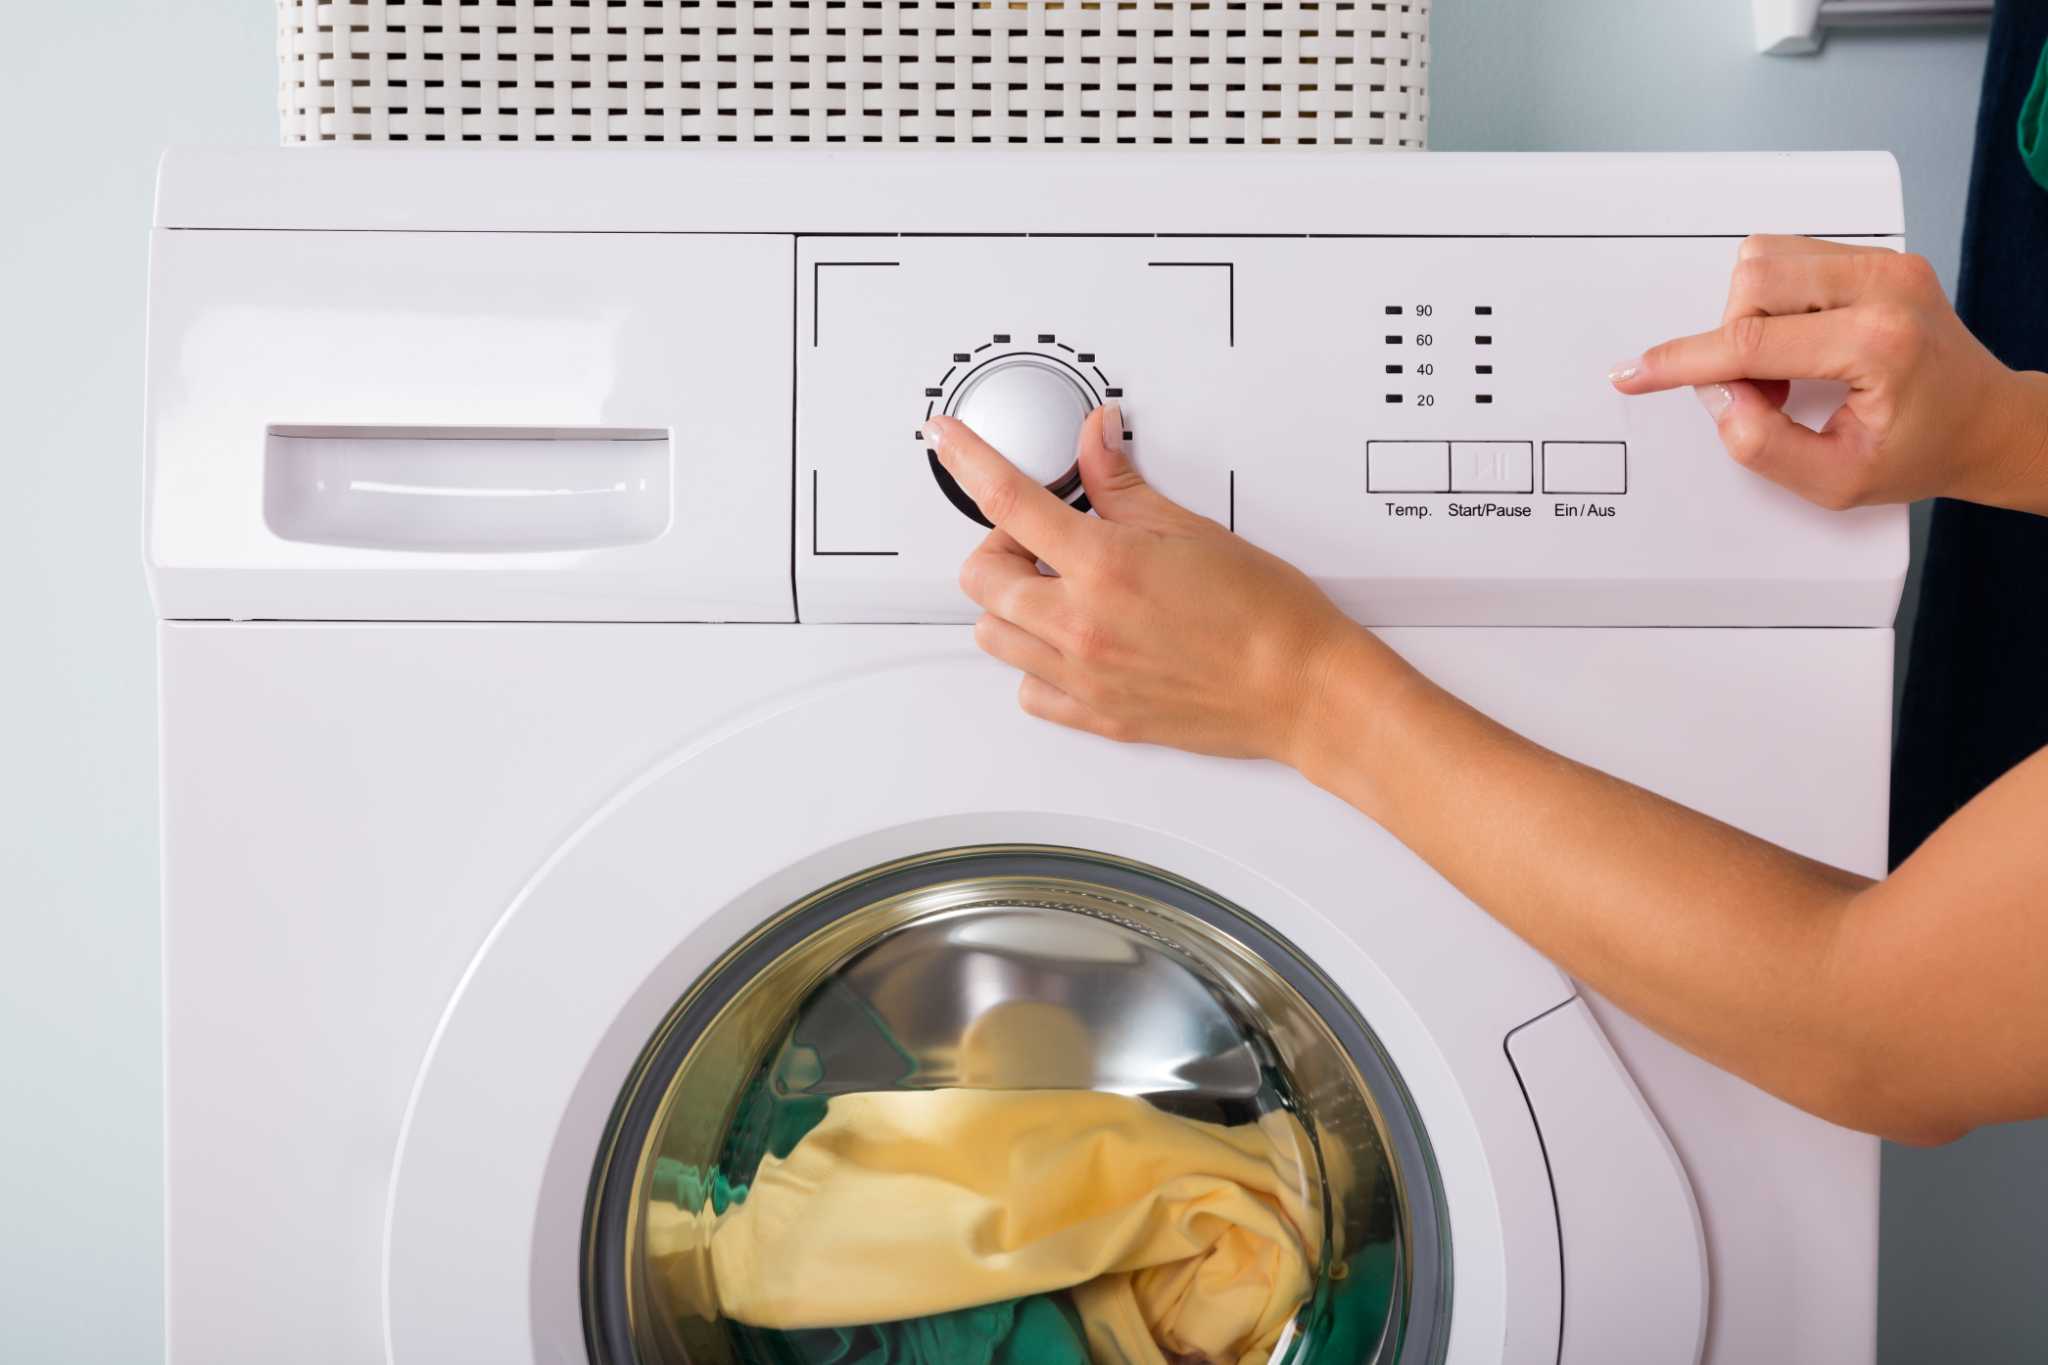 How Do I Reset My Washing Machine